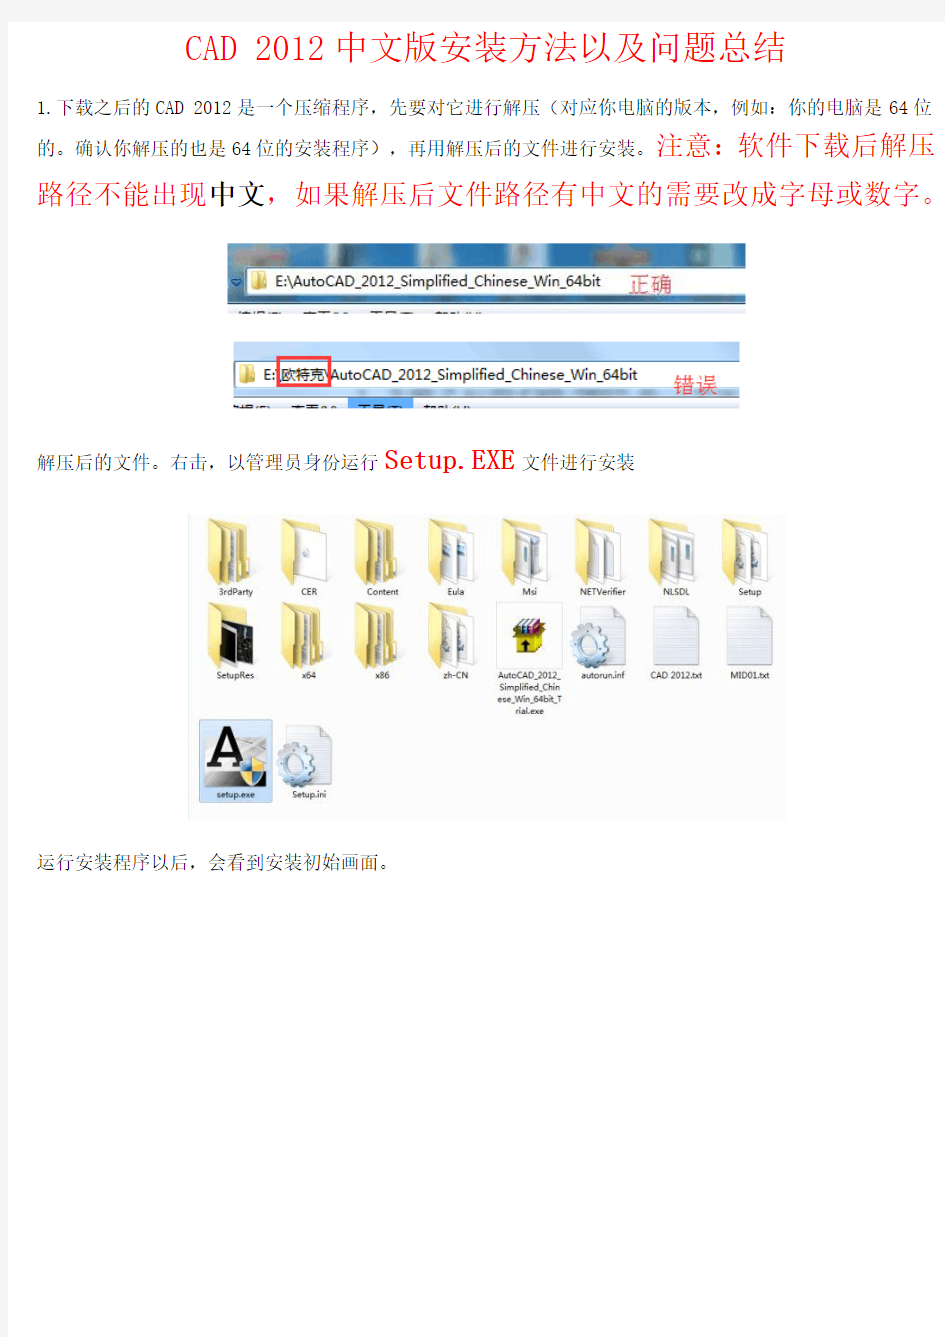 AutoCAD2012图文安装教程以及问题解决方法